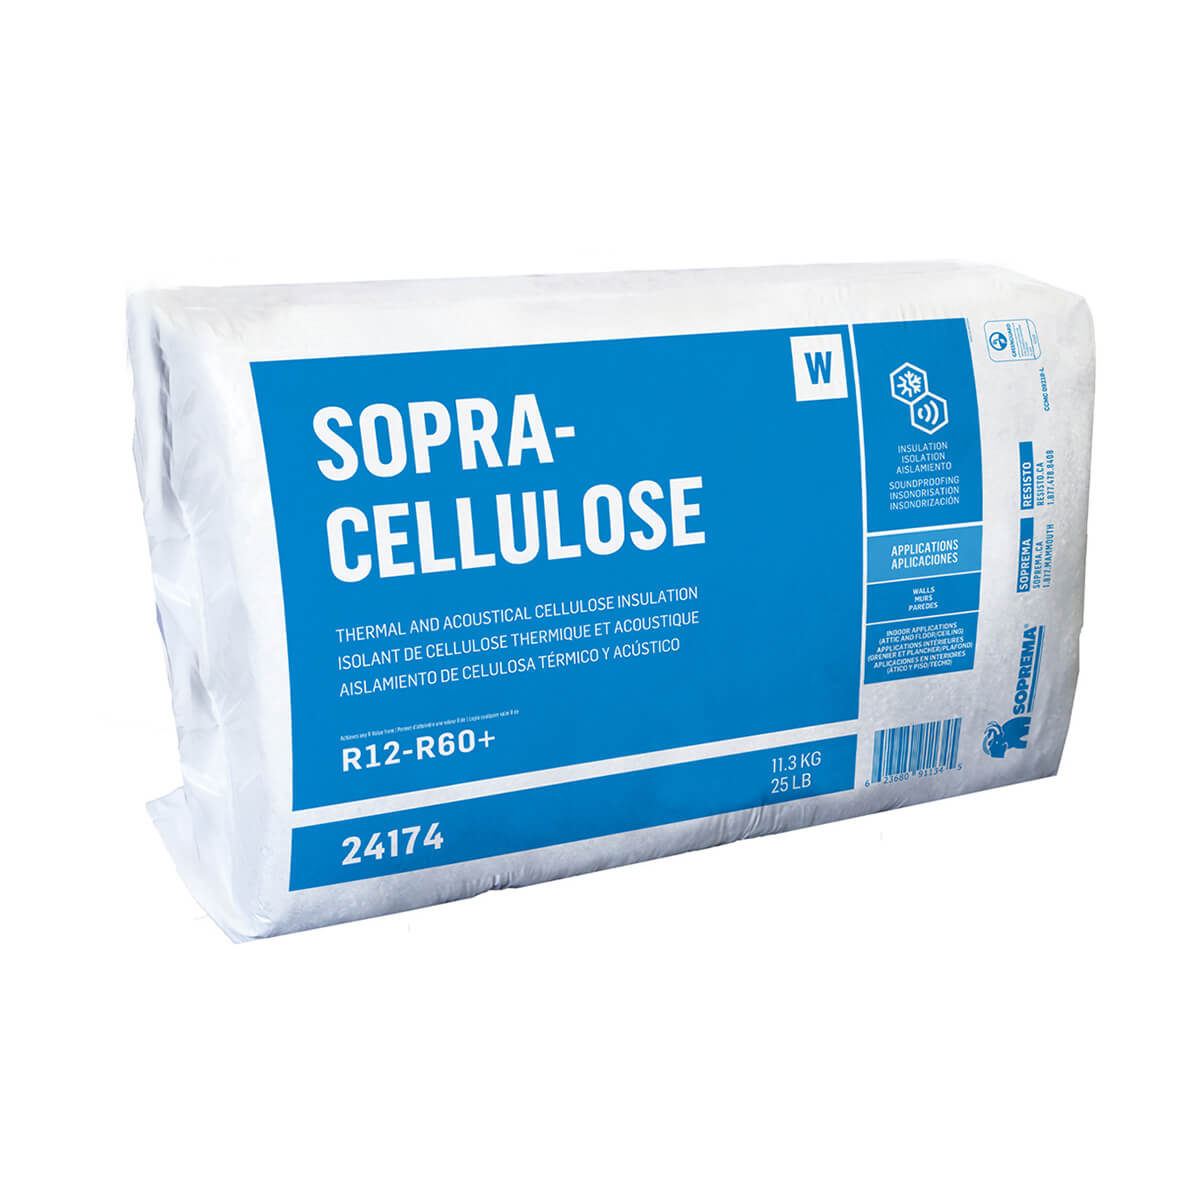 Sopra-Cellulose Insulation